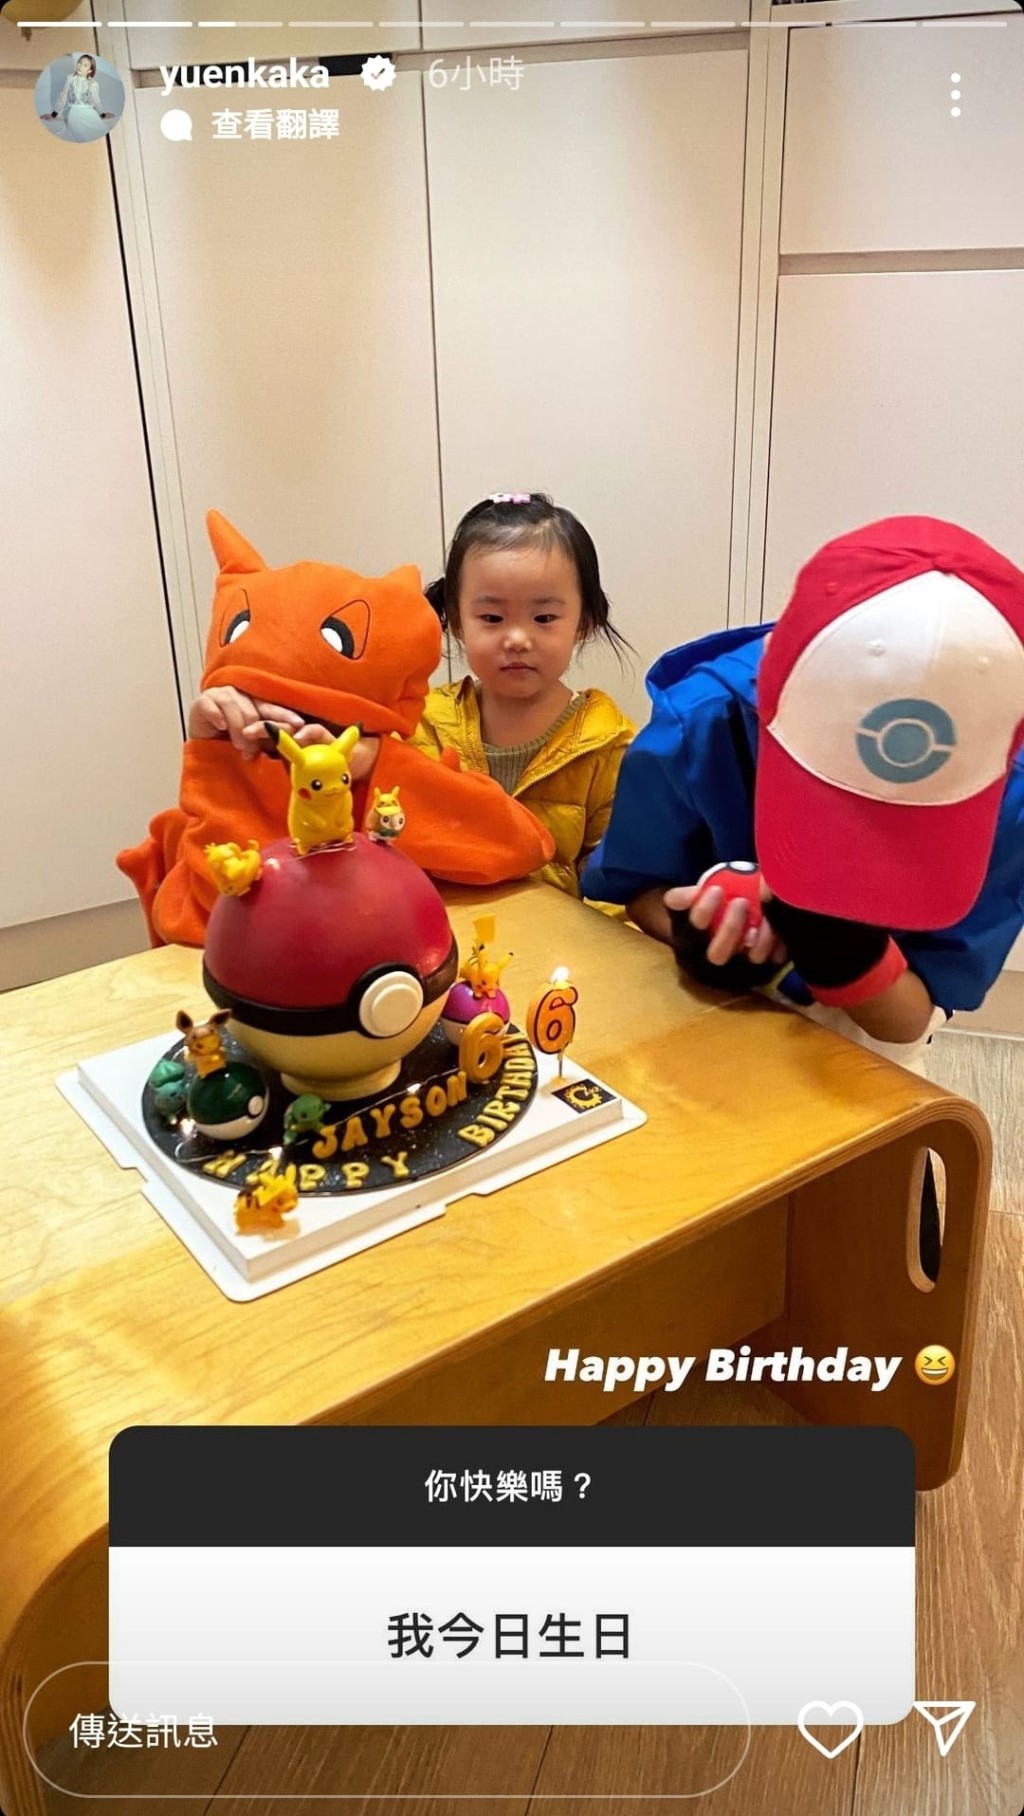 麥QQ見到蛋糕當自己生日。